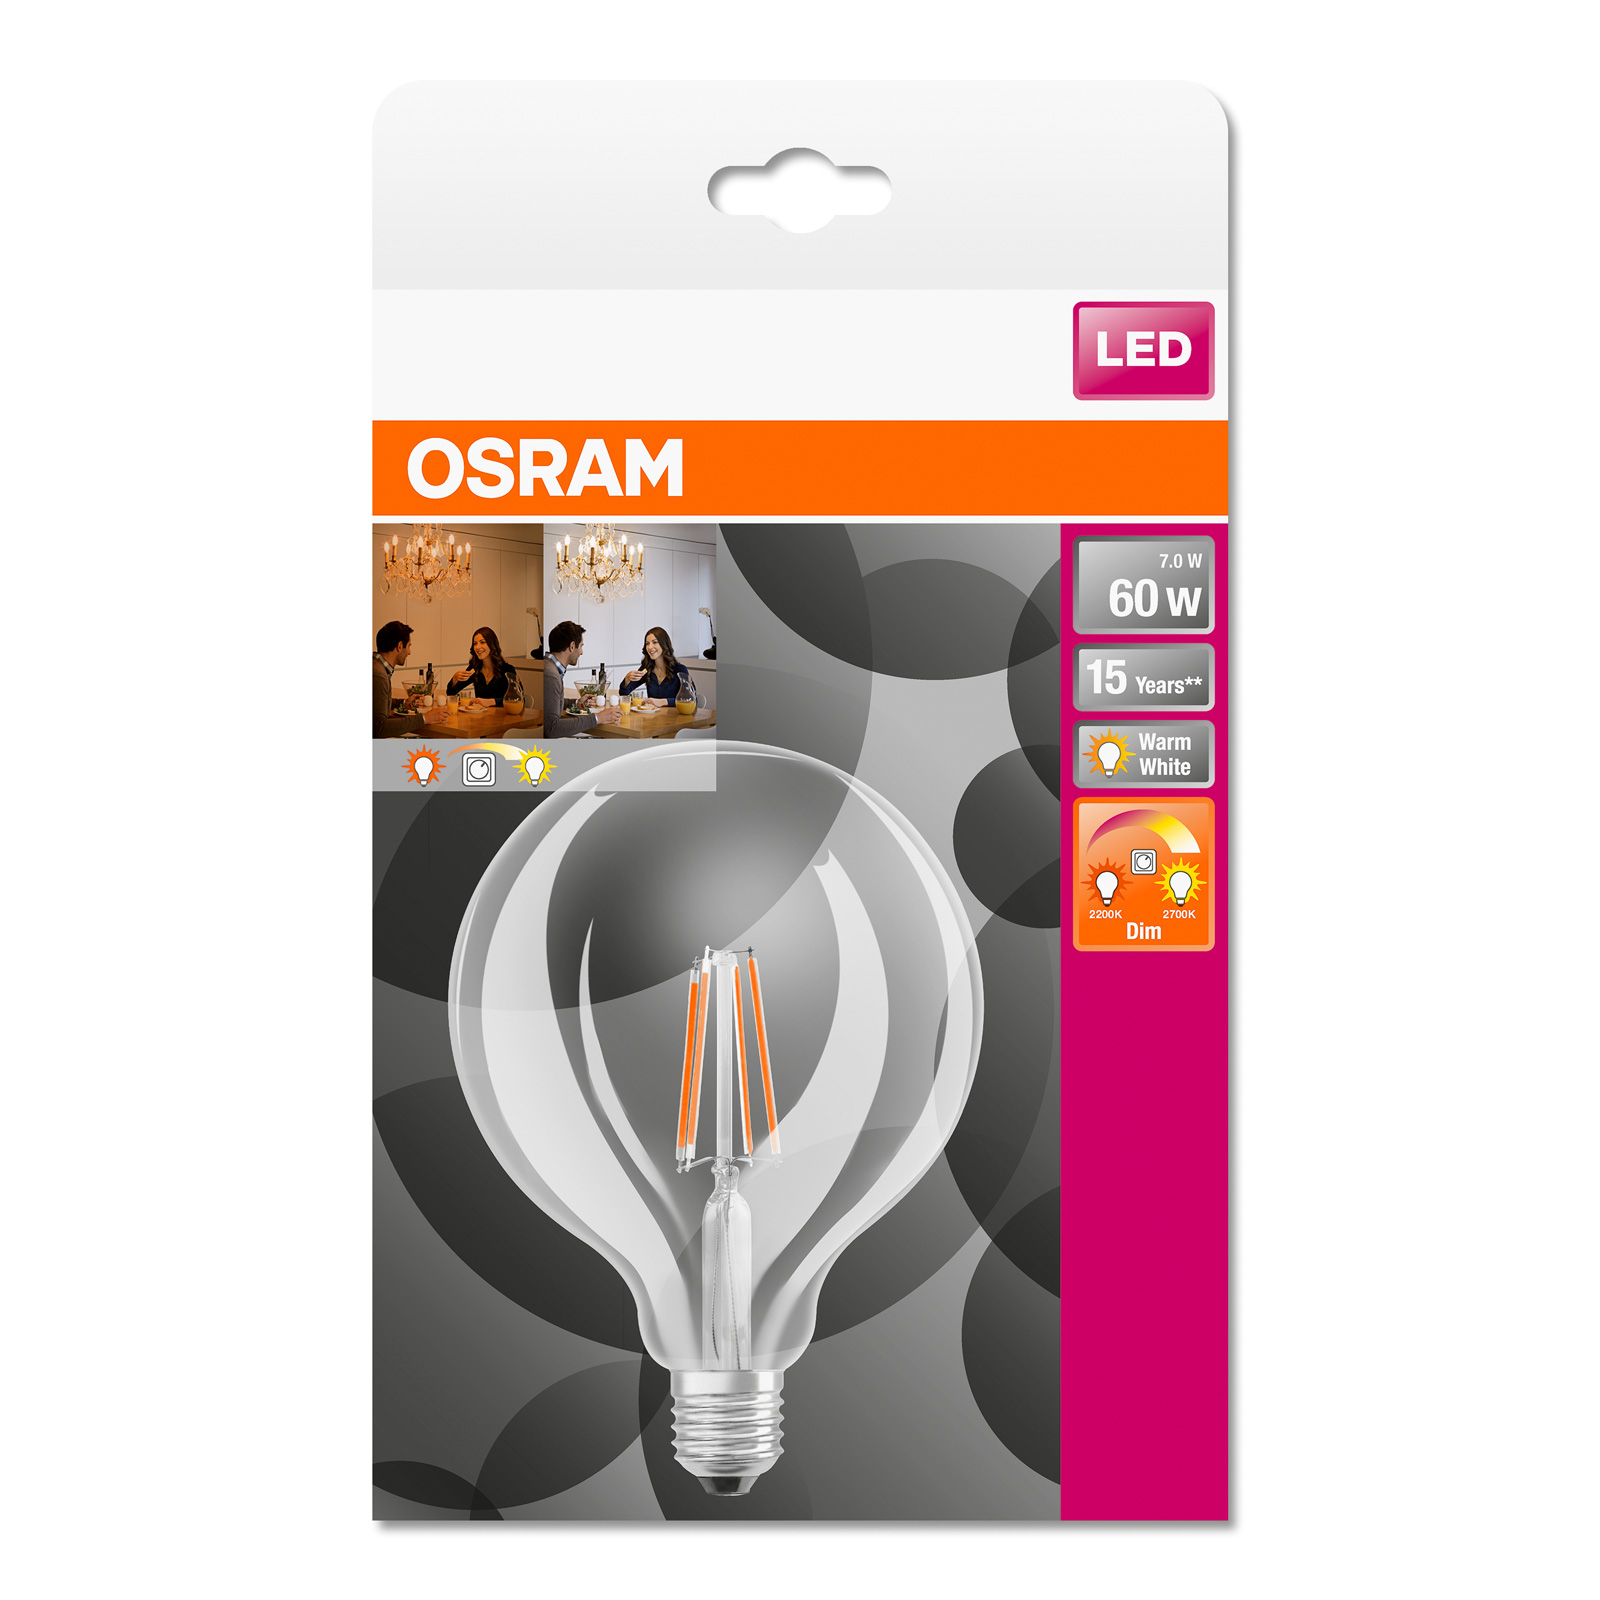 Gedachte Bezet Scharnier OSRAM LED bollamp E27 6,5W G125 827 Glow dim | Lampen24.nl